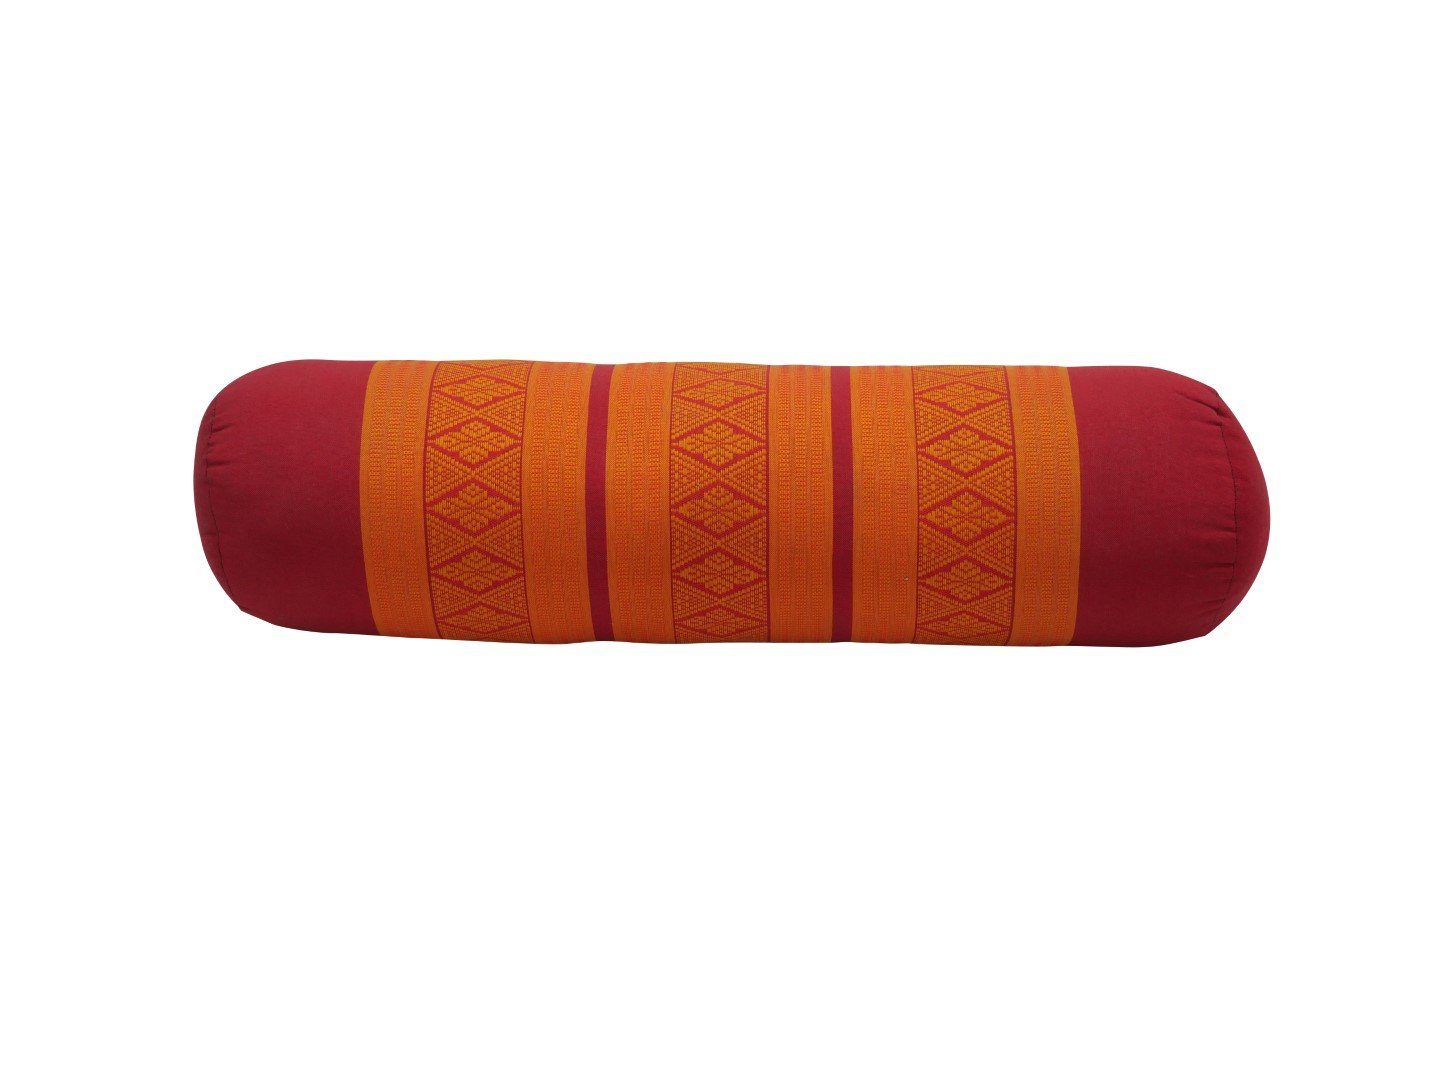 angenehm Thaimassage my rot-orange, Yogakissen Yogakissen Yoga, Hamam Pilatesrolle unterstützend, Pilates, hilfreich Nackenstütze für